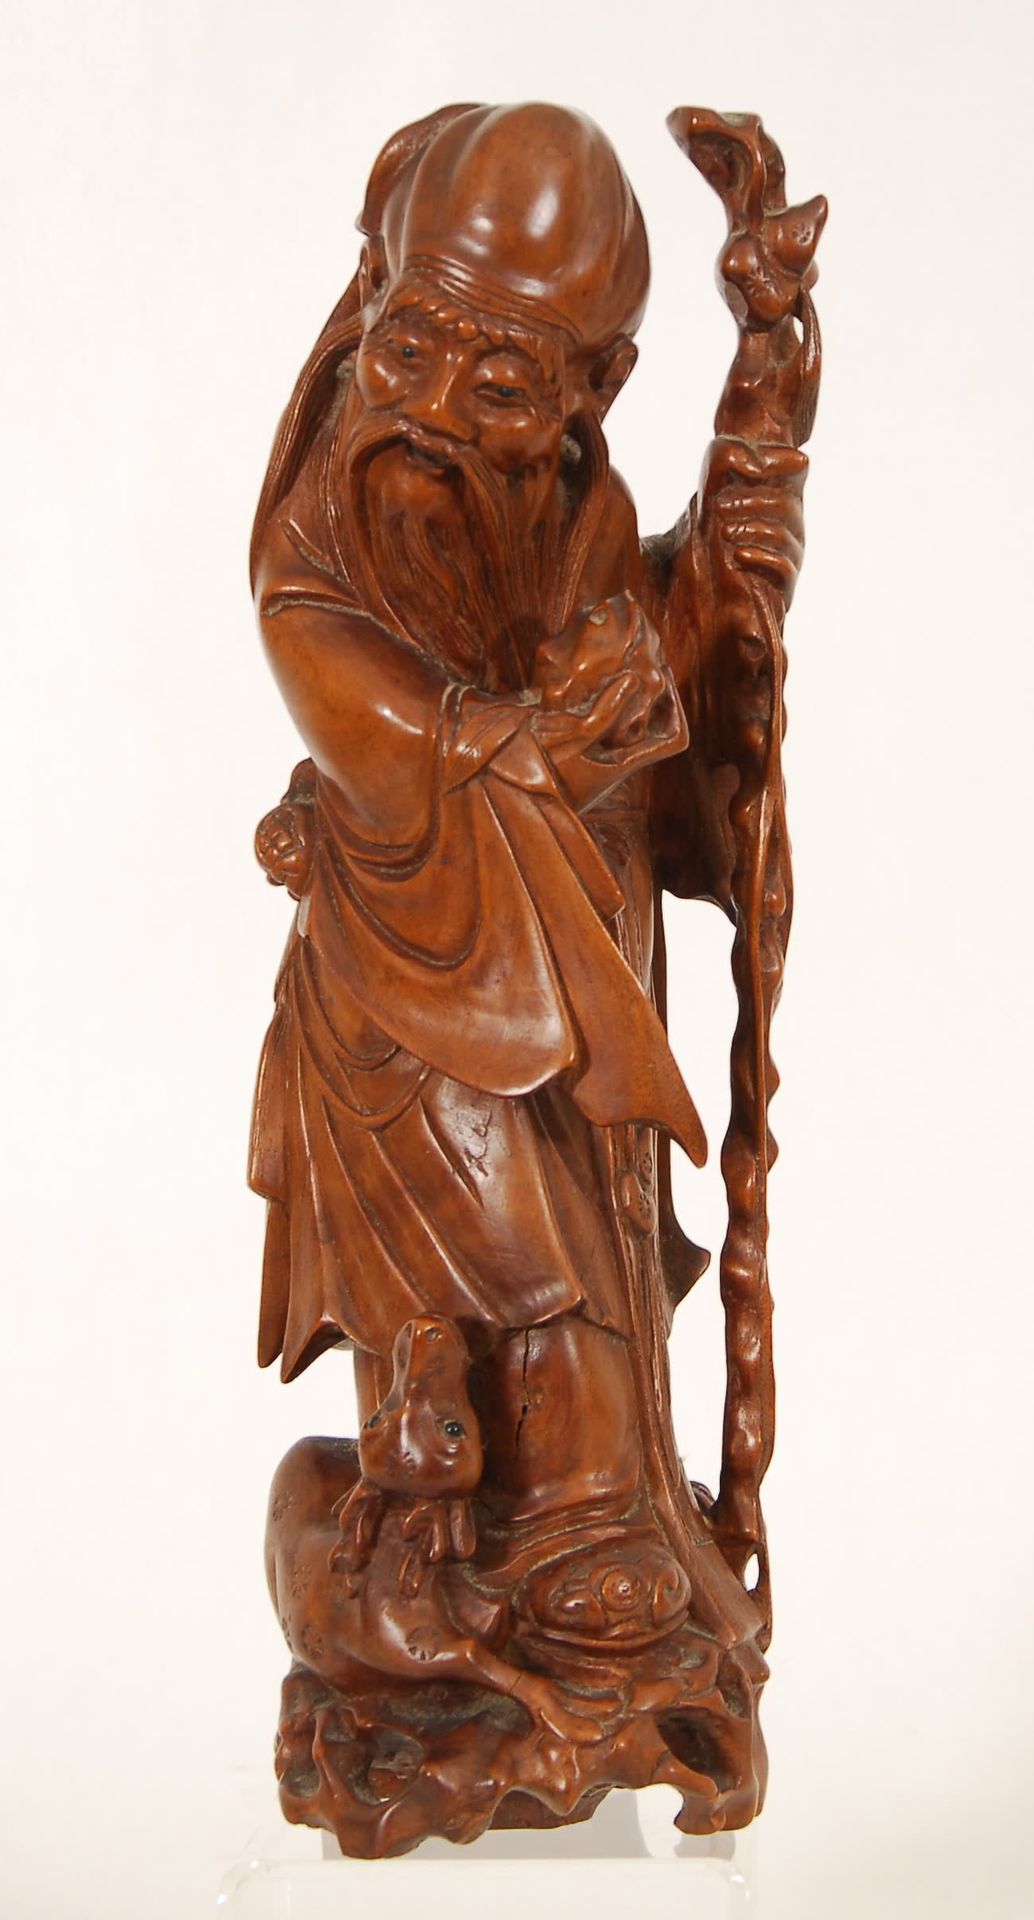 Null Shou lao à la biche
Bois sculpté. Chine, fin XIXe sicèle.
H. 35 cm.